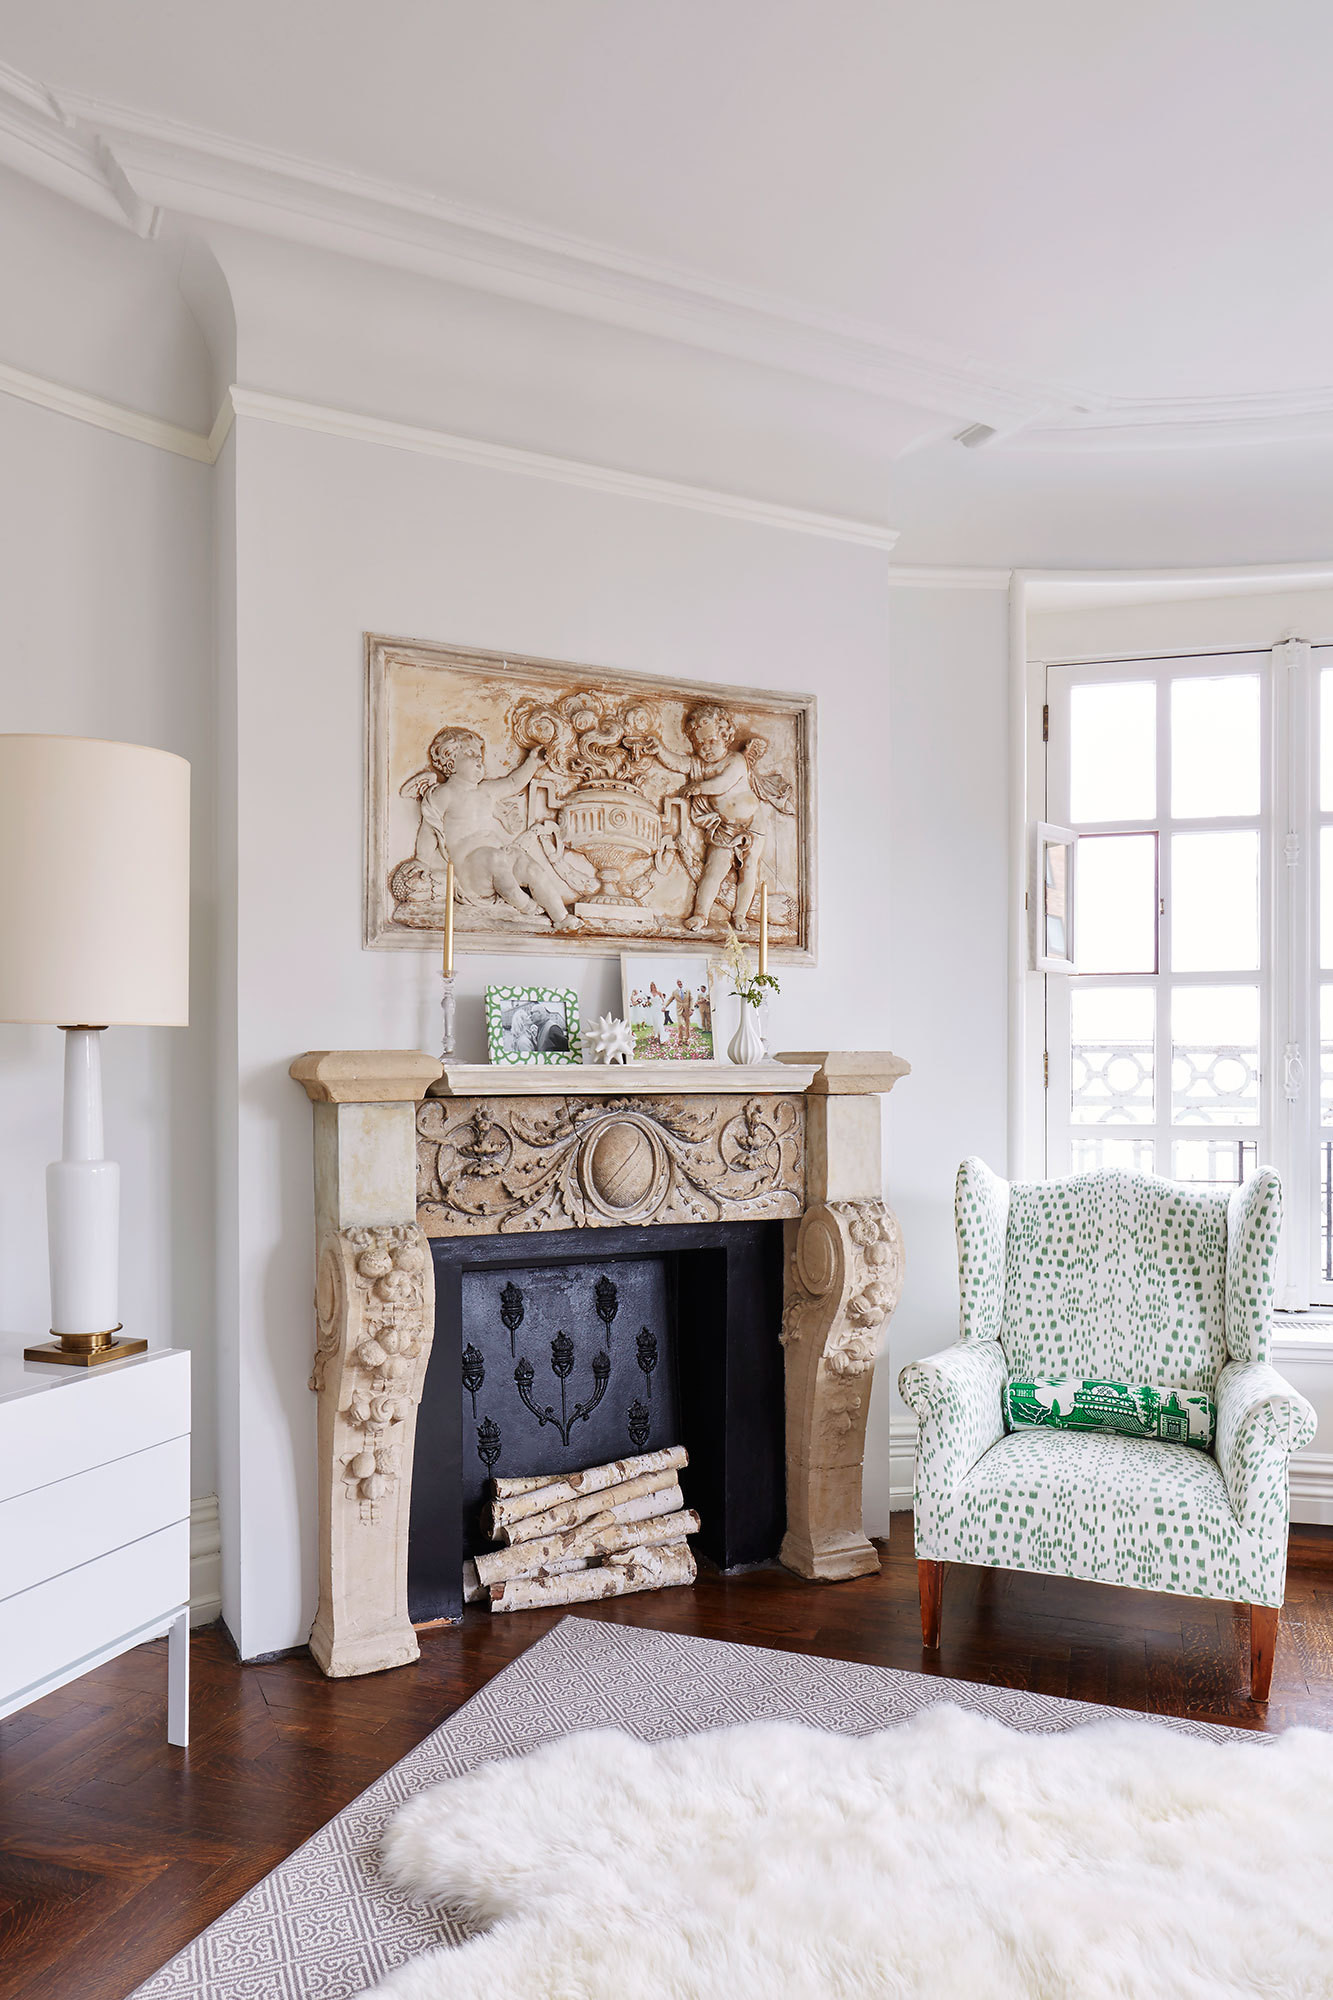 Room of the Week: Pastel Living Room in Dreamy Paris